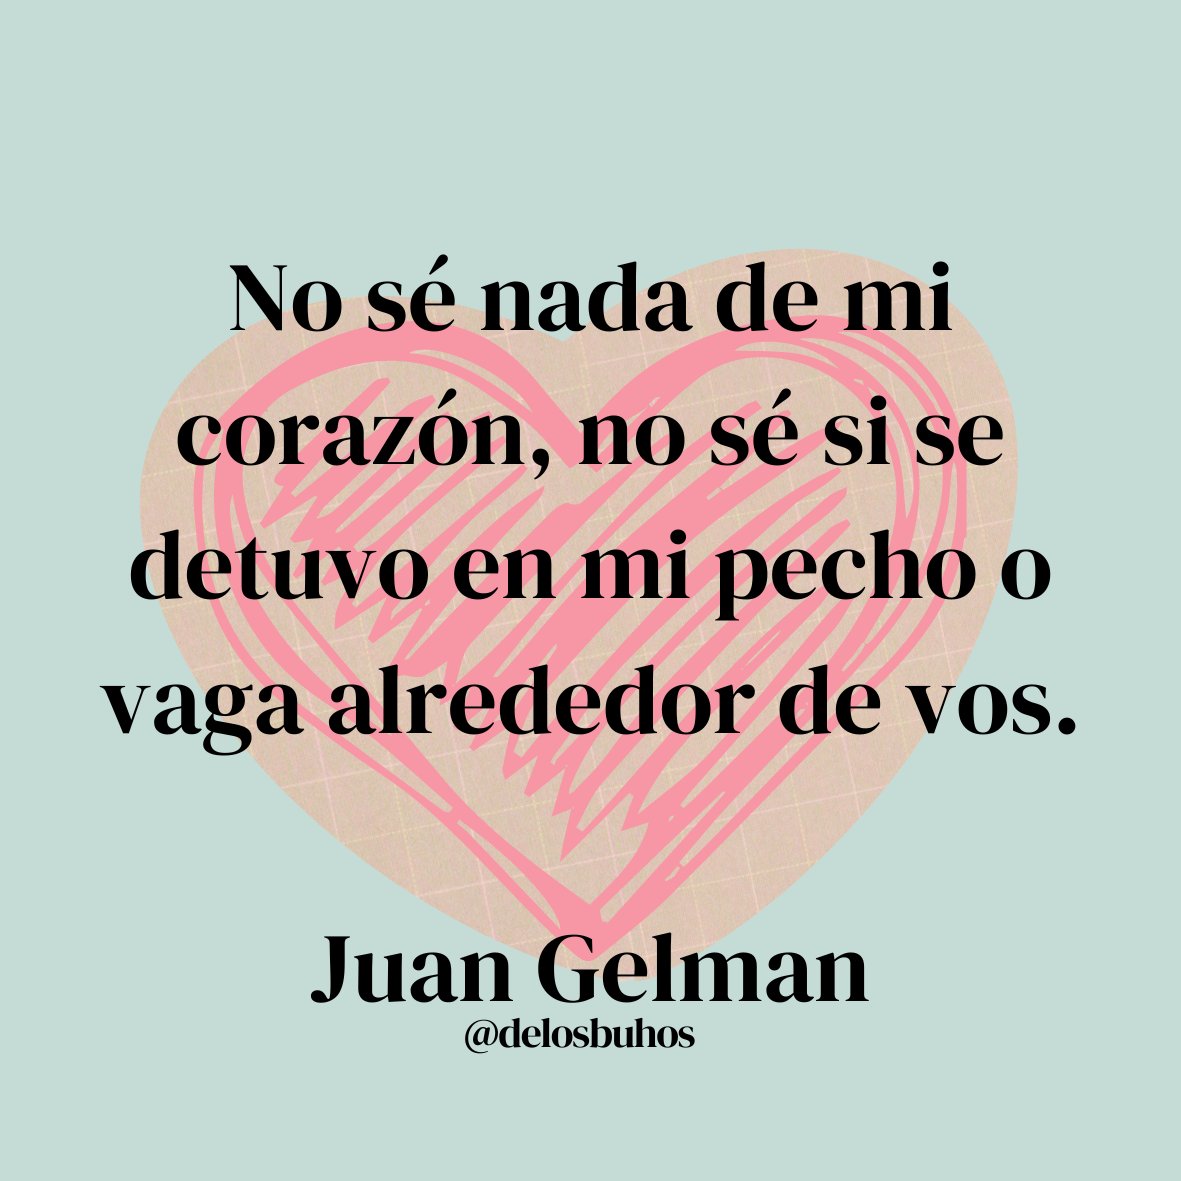 *
No sé nada de mi corazón, no sé si se detuvo en mi pecho o vaga alrededor de vos.

#JuanGelman
~
#LeaPoesía #LaAlegríaDeLeer #RegalaUnLibro 📚 #LeerEsVivir #PromociónDeLectura #México🇲🇽 #Uruguay🇺🇾 #Venezuela🇻🇪 #Portugal🇵🇹 #Brasil🇧🇷 #España🇪🇸 #Argentina🇦🇷 #EEUU🇺🇸